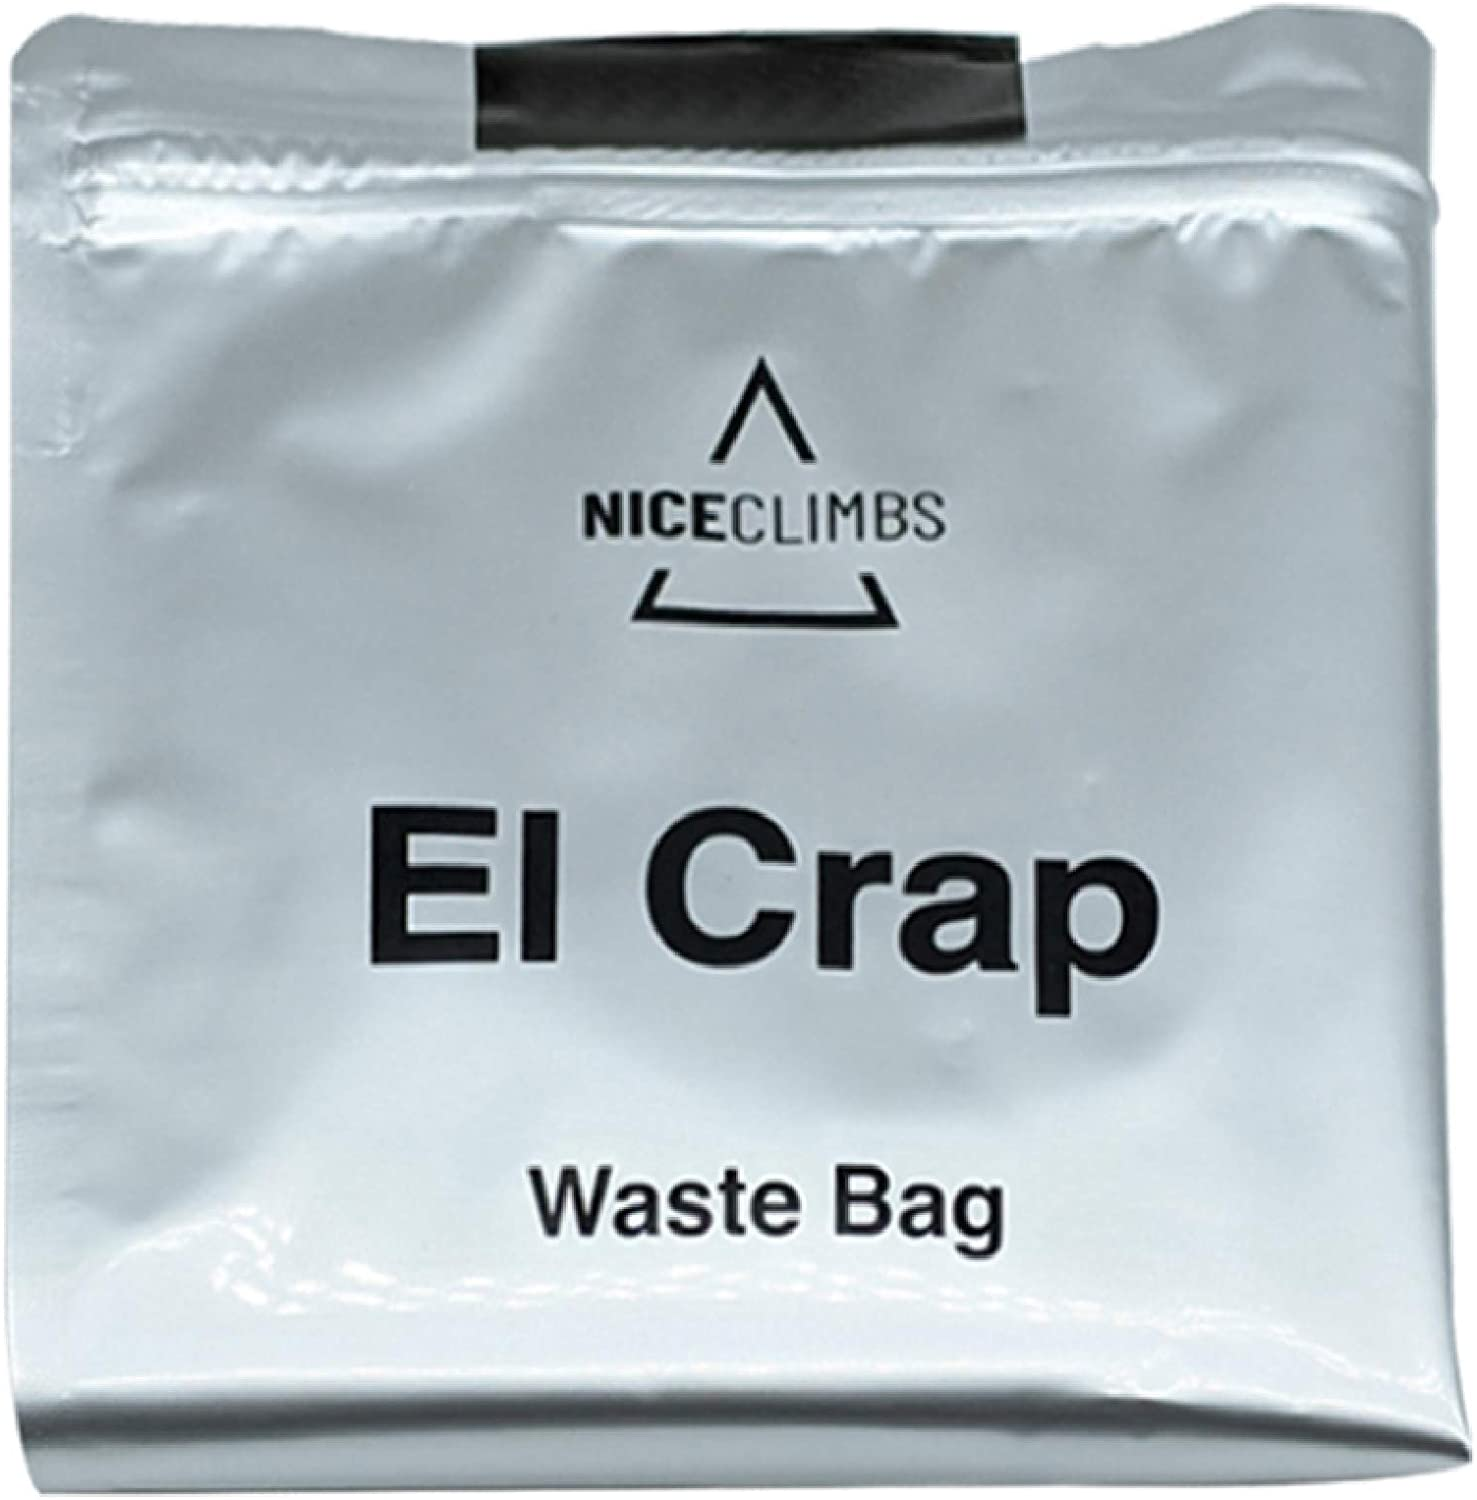 NiceClimbs El Crap Waste Bag Toilet Kit